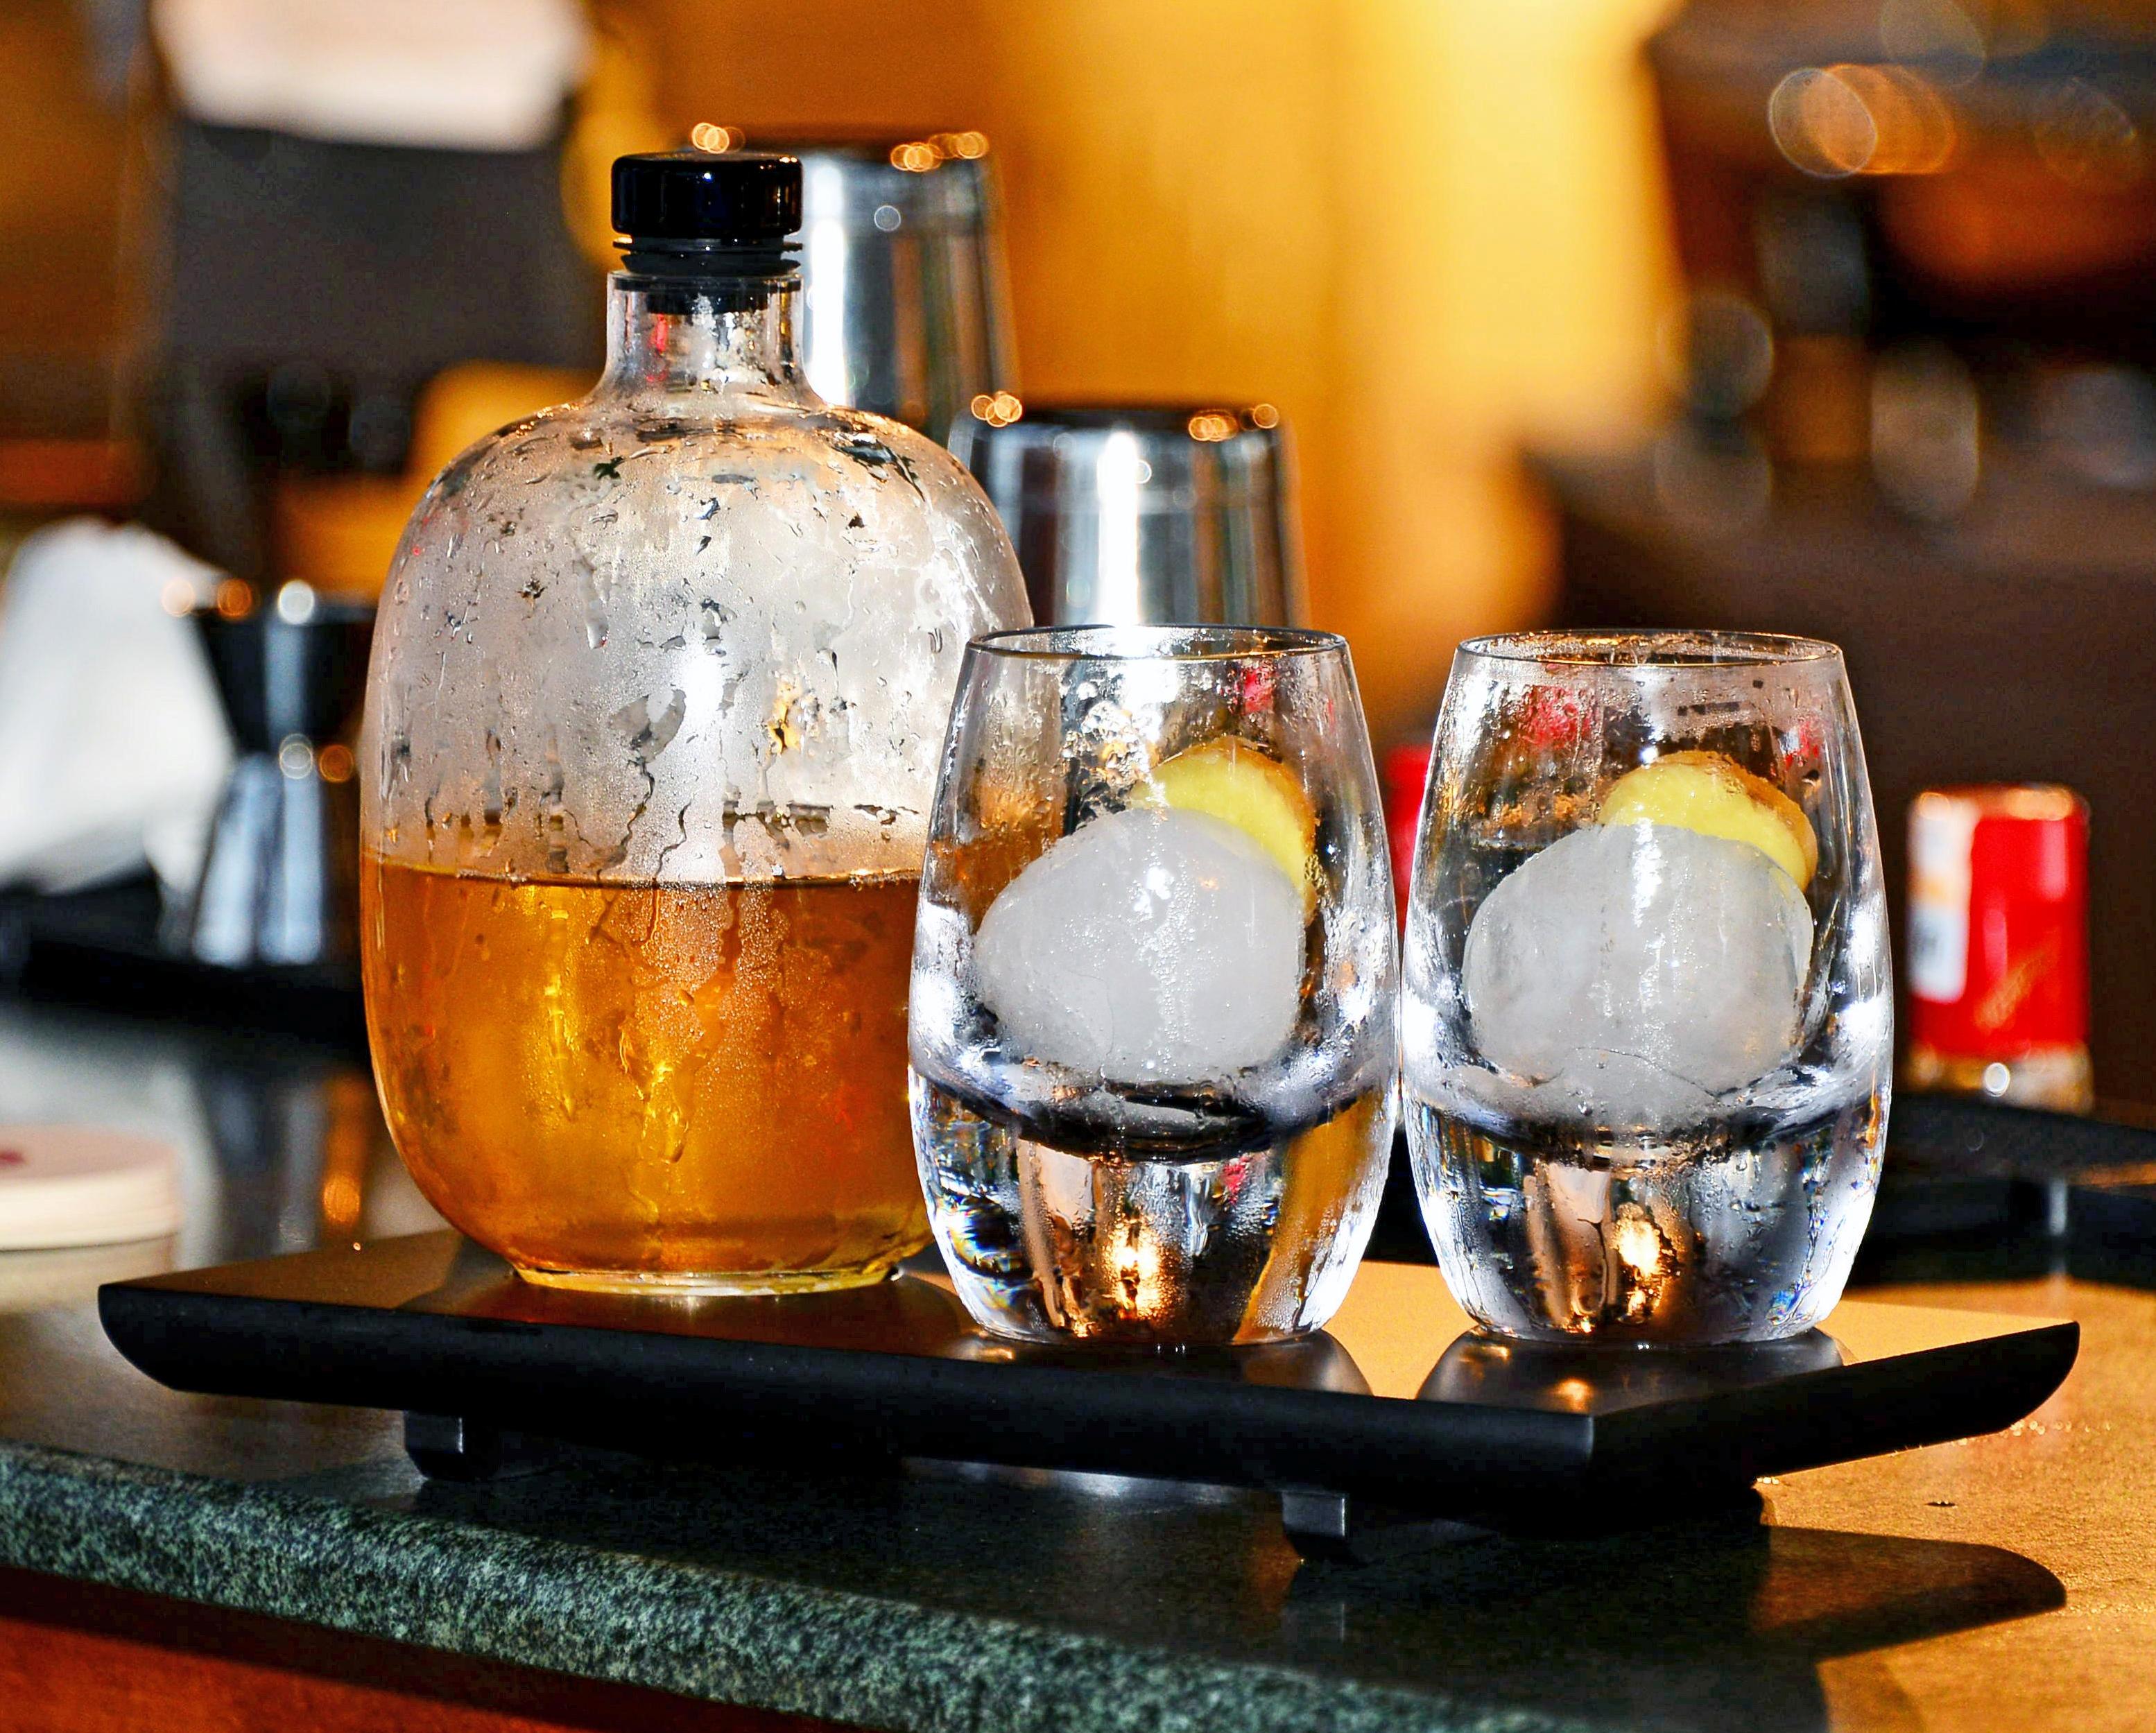 Buzlardan süzülmüş Rize çayı, zencefil ve isli Skoç viskiyle yapılan Smokey Rize Tuxedo, zarif bir setle sunuluyor.